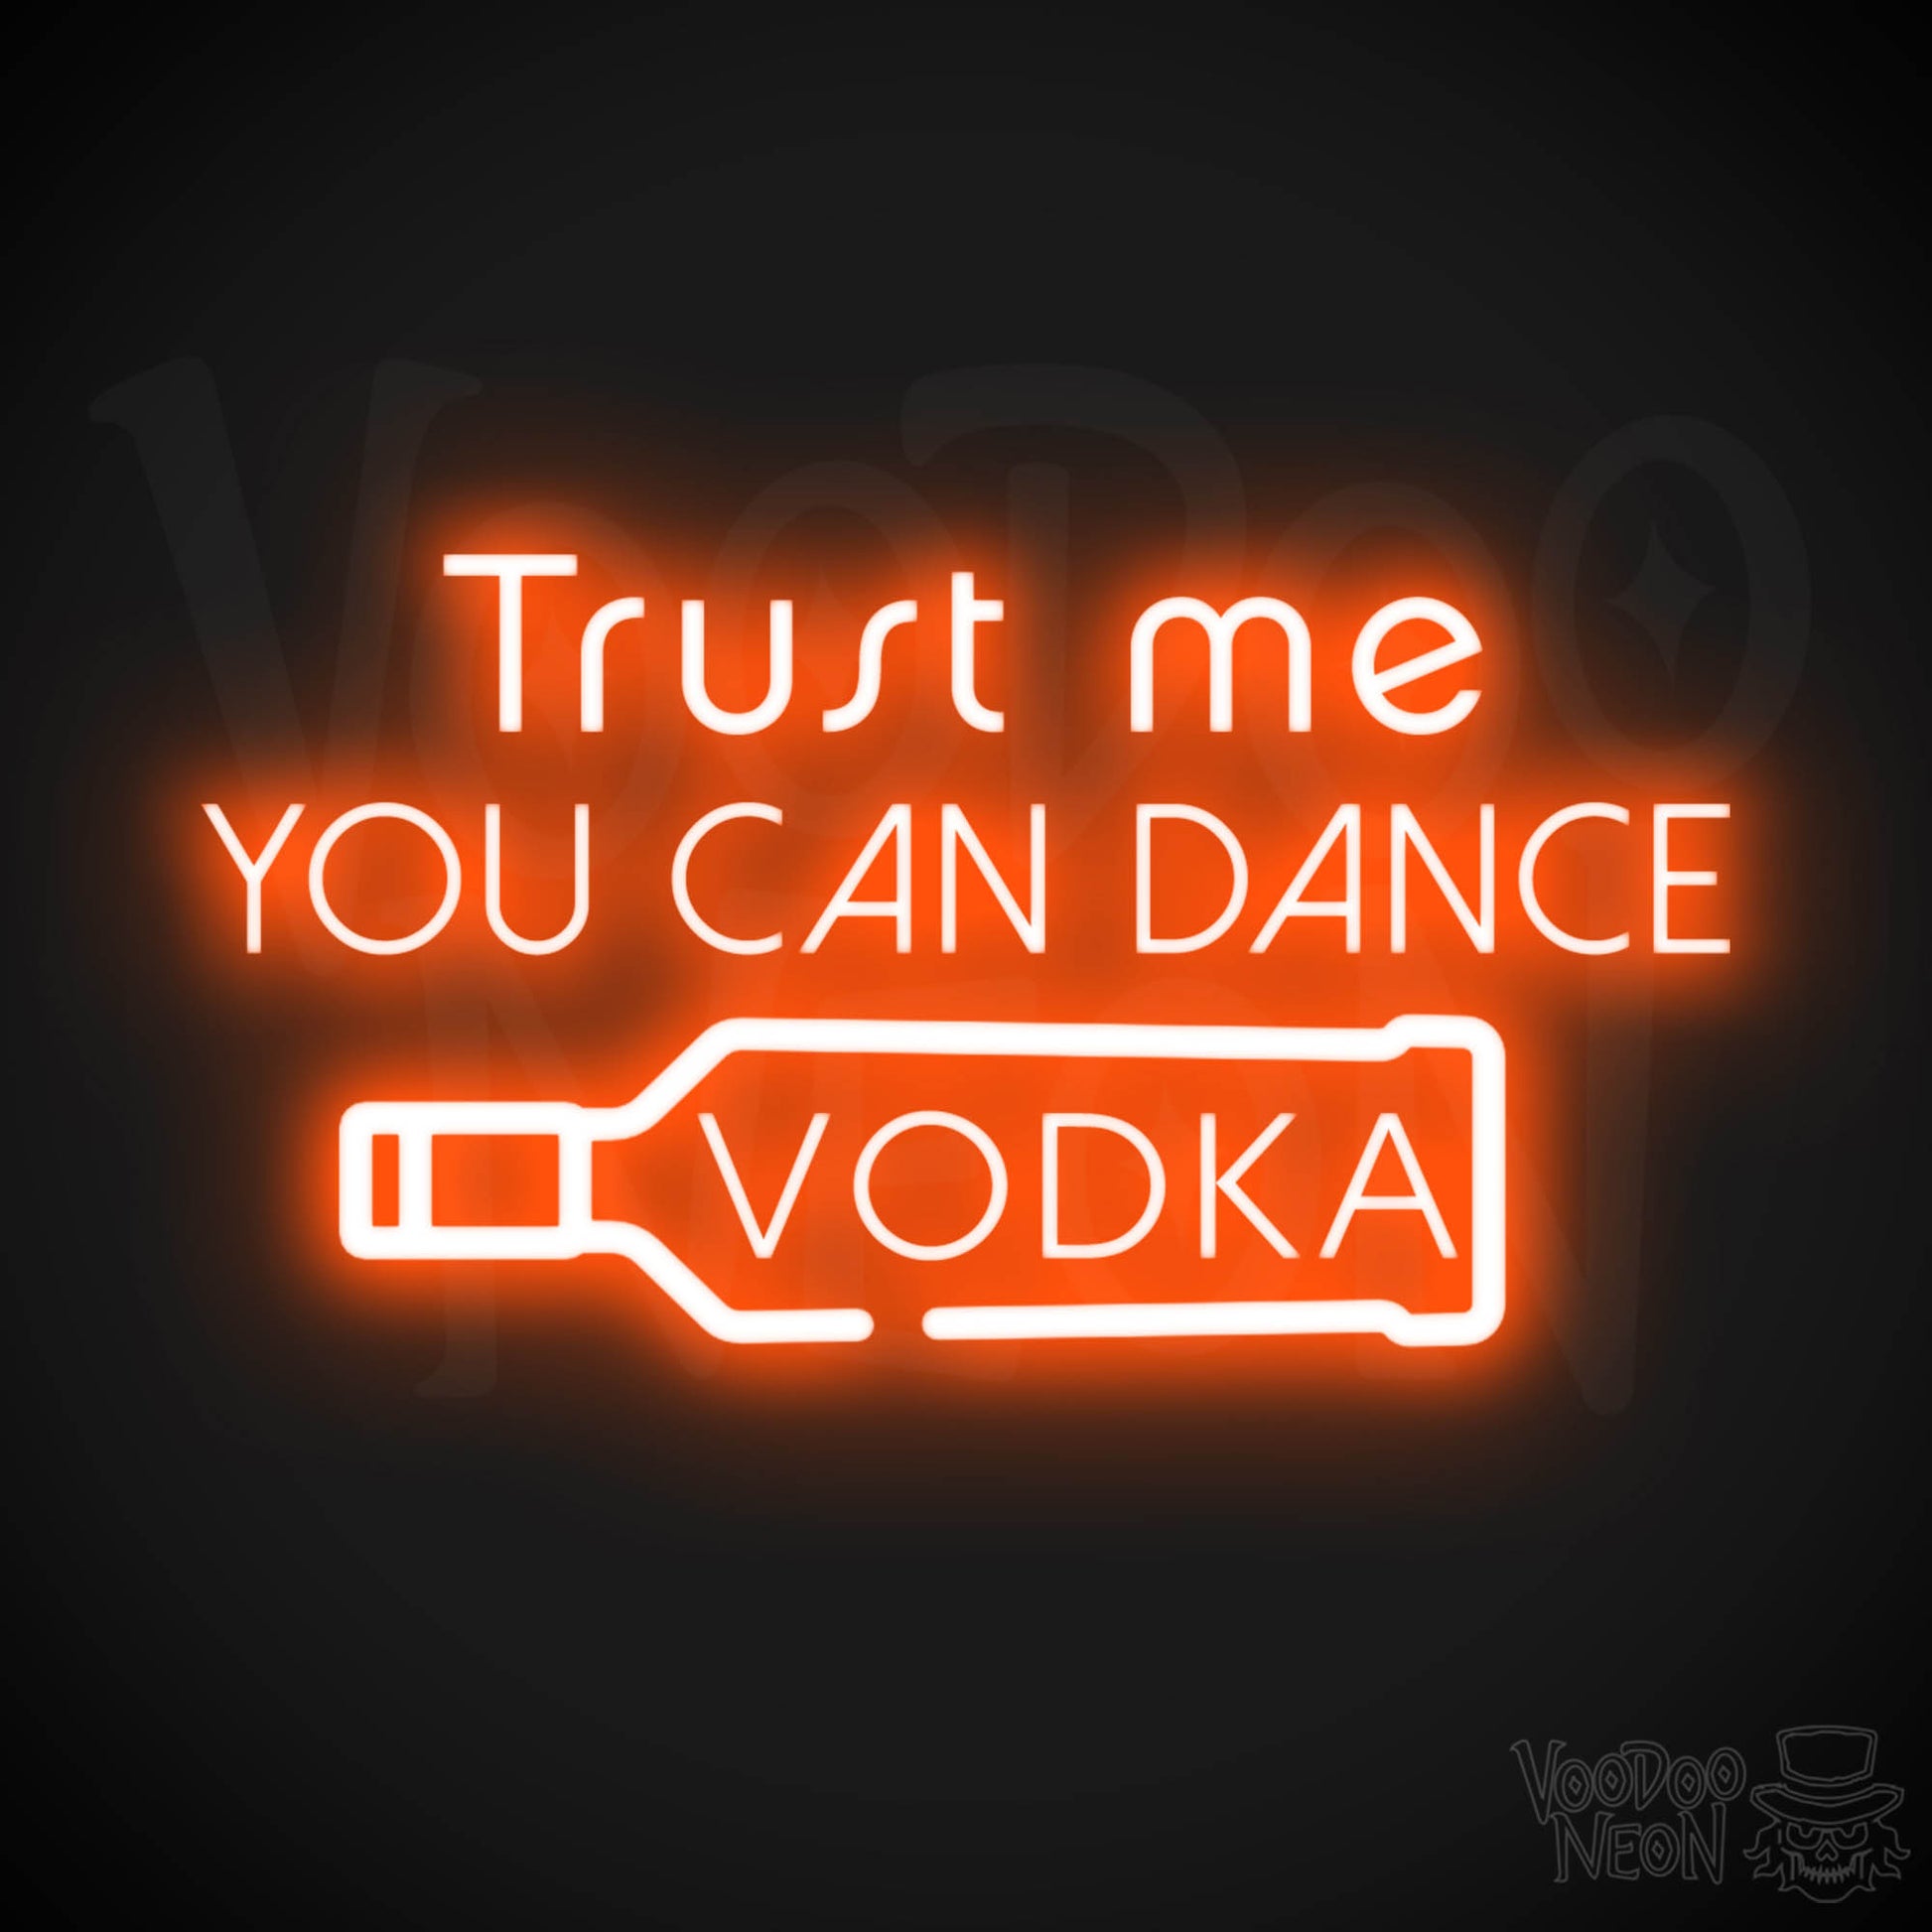 Trust Me You Can Dance Vodka Neon Sign - Vodka Bar Sign - LED Signs - Color Orange